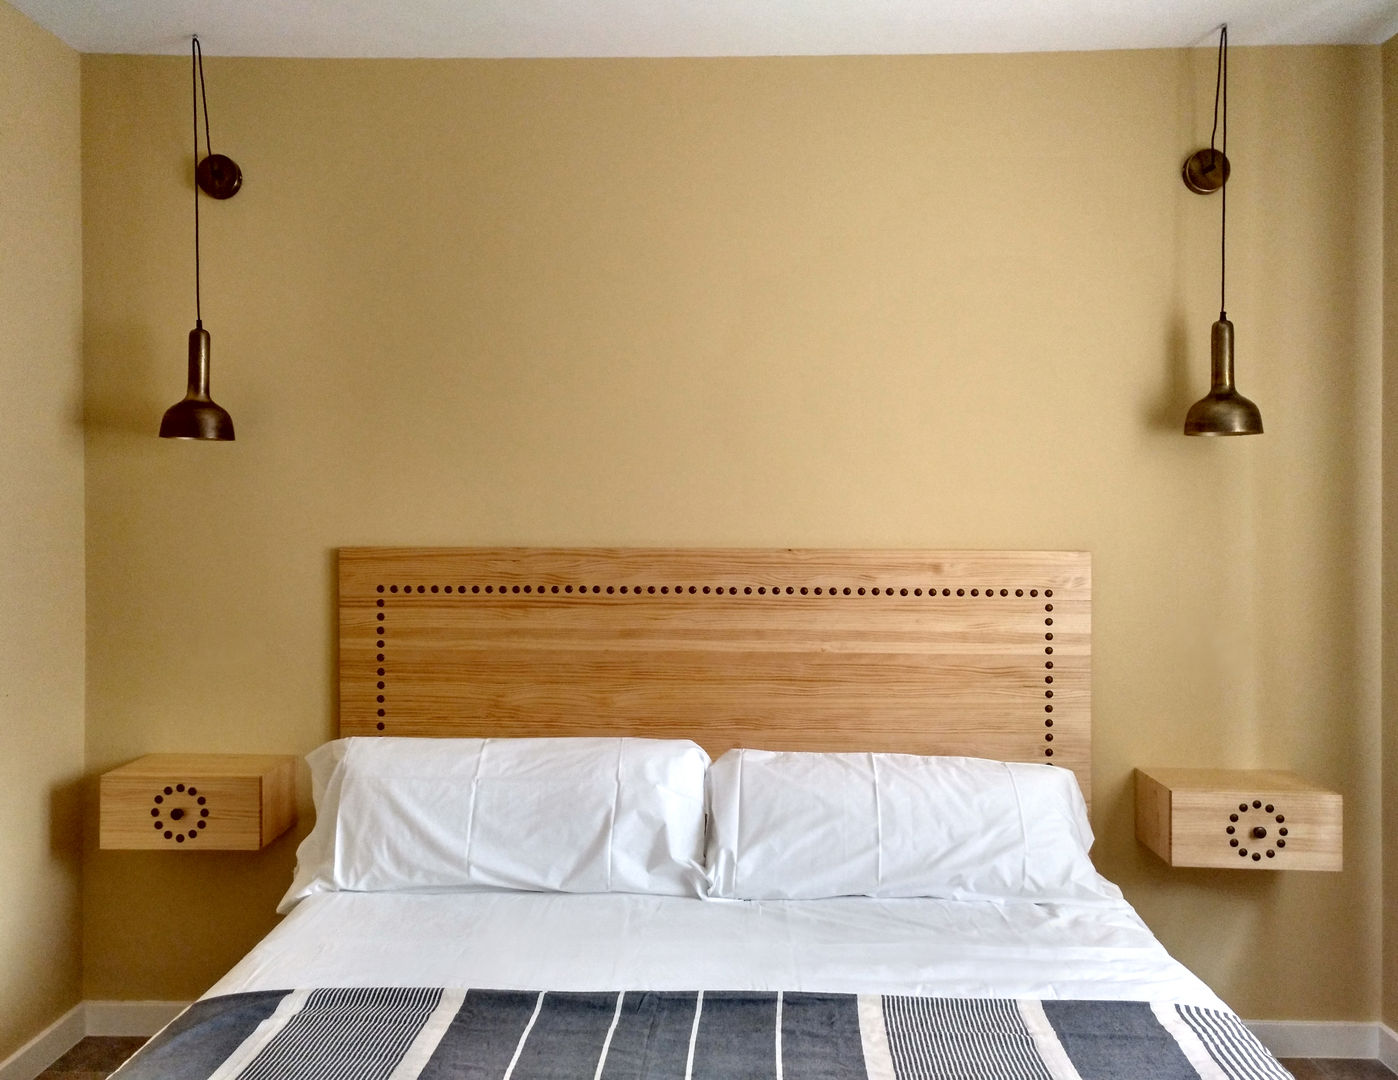 Dormitorio doble para una casa rural en Segovia CARMITA DESIGN diseño de interiores en Madrid Dormitorios de estilo mediterráneo Madera Acabado en madera dormitorio,cabecero,a medida,proyecto,interiorismo,decoracion,casa,rural,espirdo,segovia,madera,pino